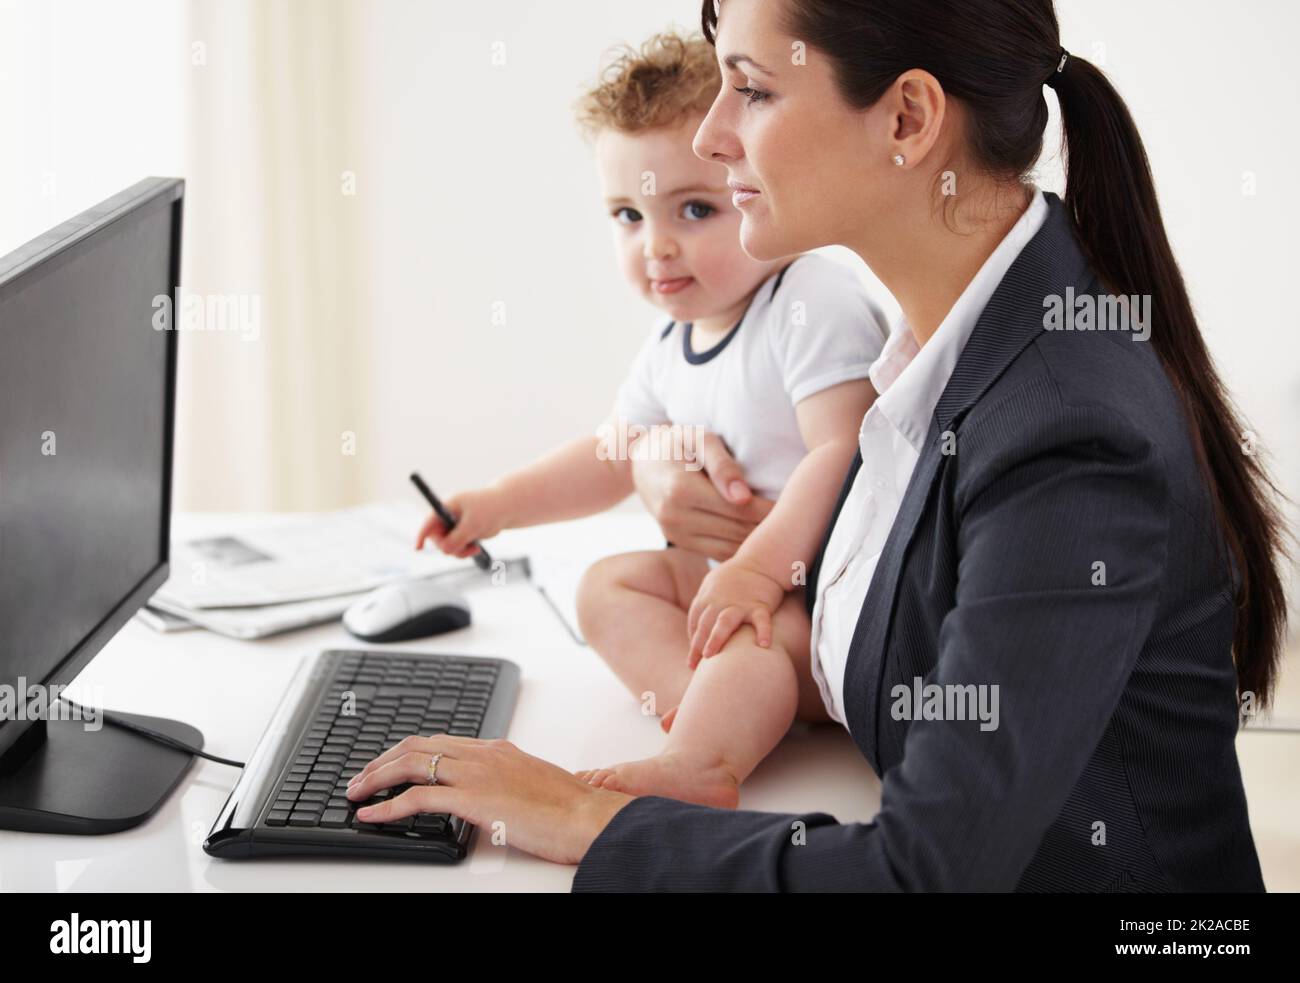 Être une maman qui travaille prend de super pouvoirs. Mère travaillant tenant un bébé tout en travaillant sur son ordinateur. Banque D'Images